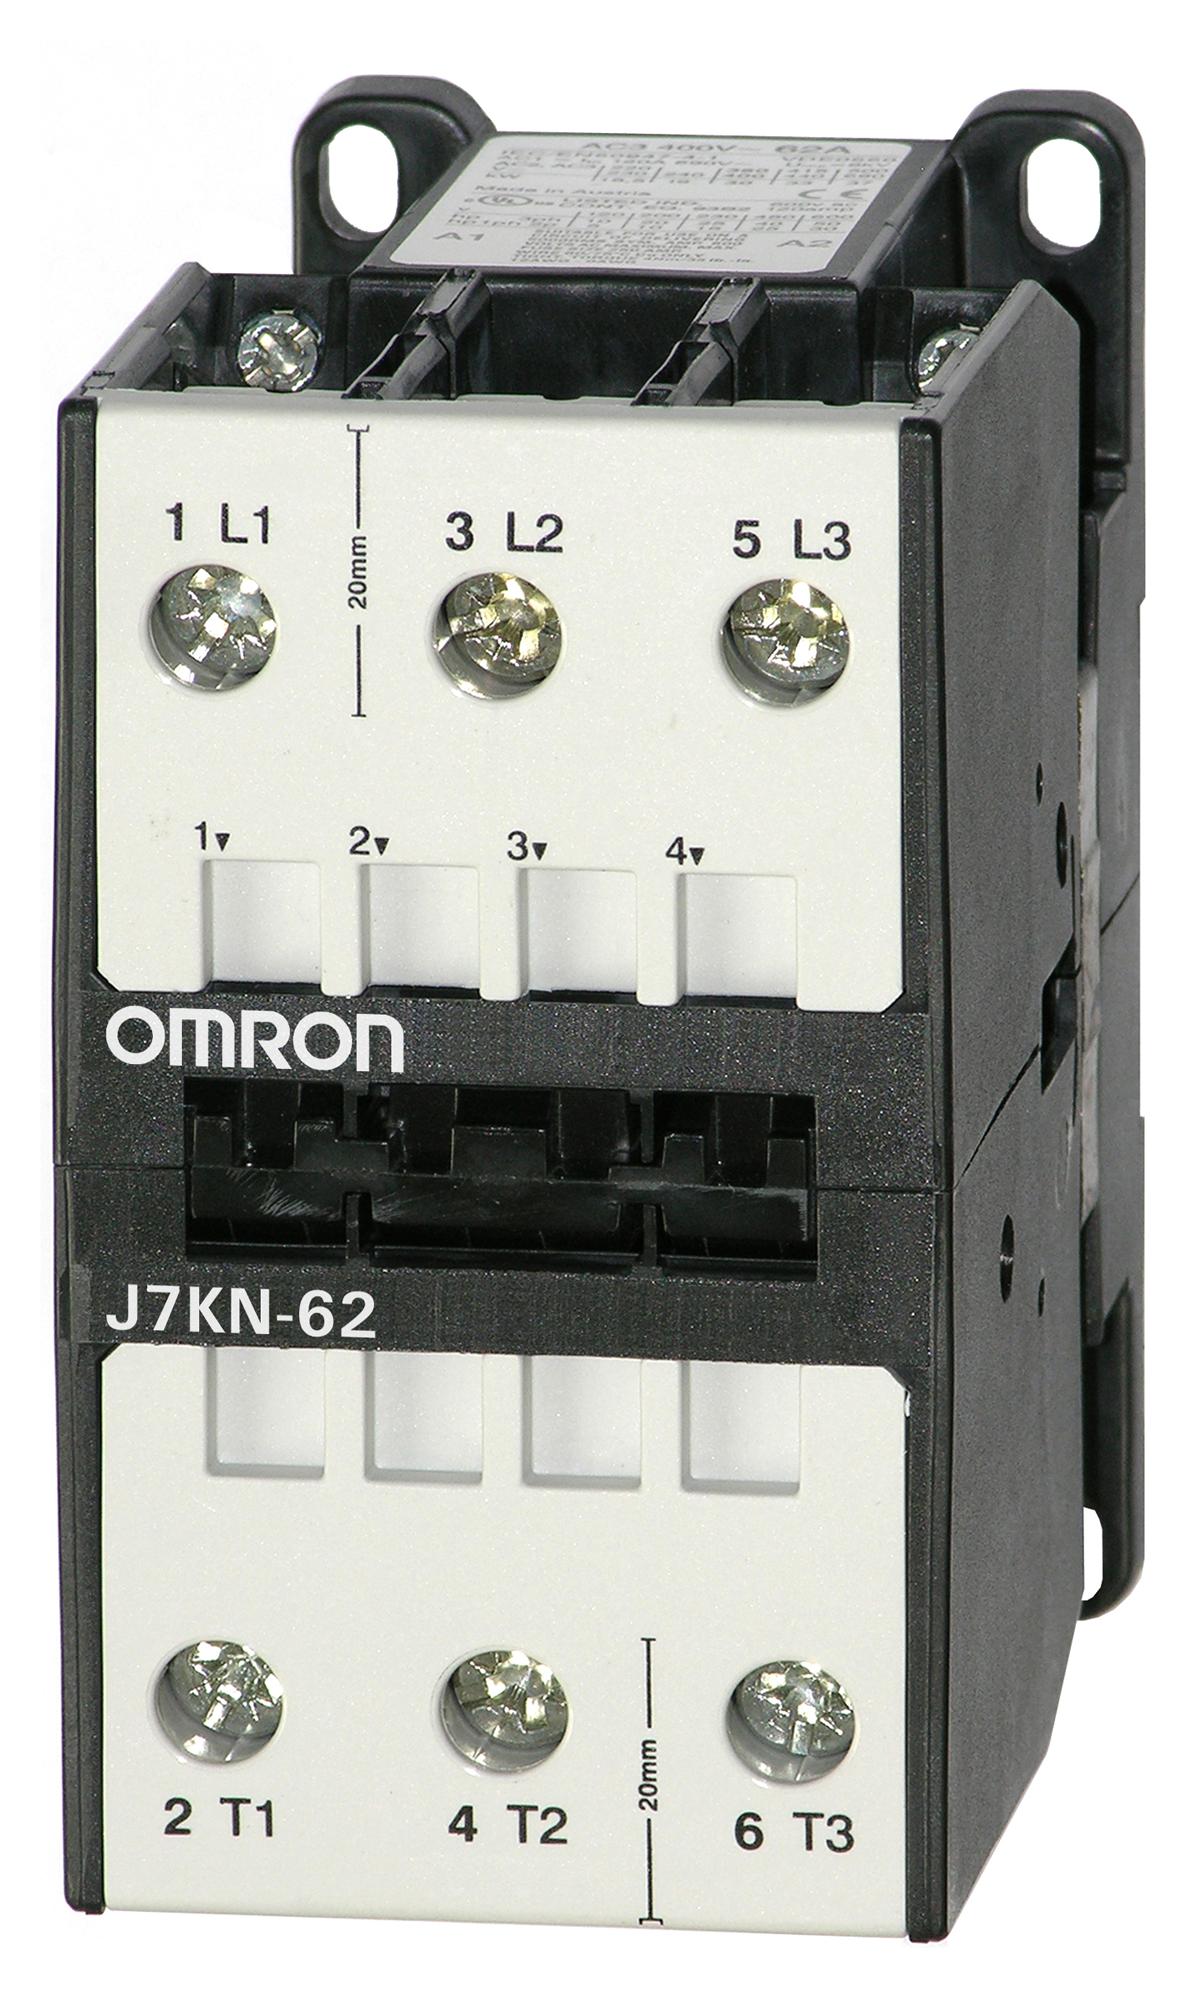 J7KN-62 230 CONTACTORS RELAYS OMRON